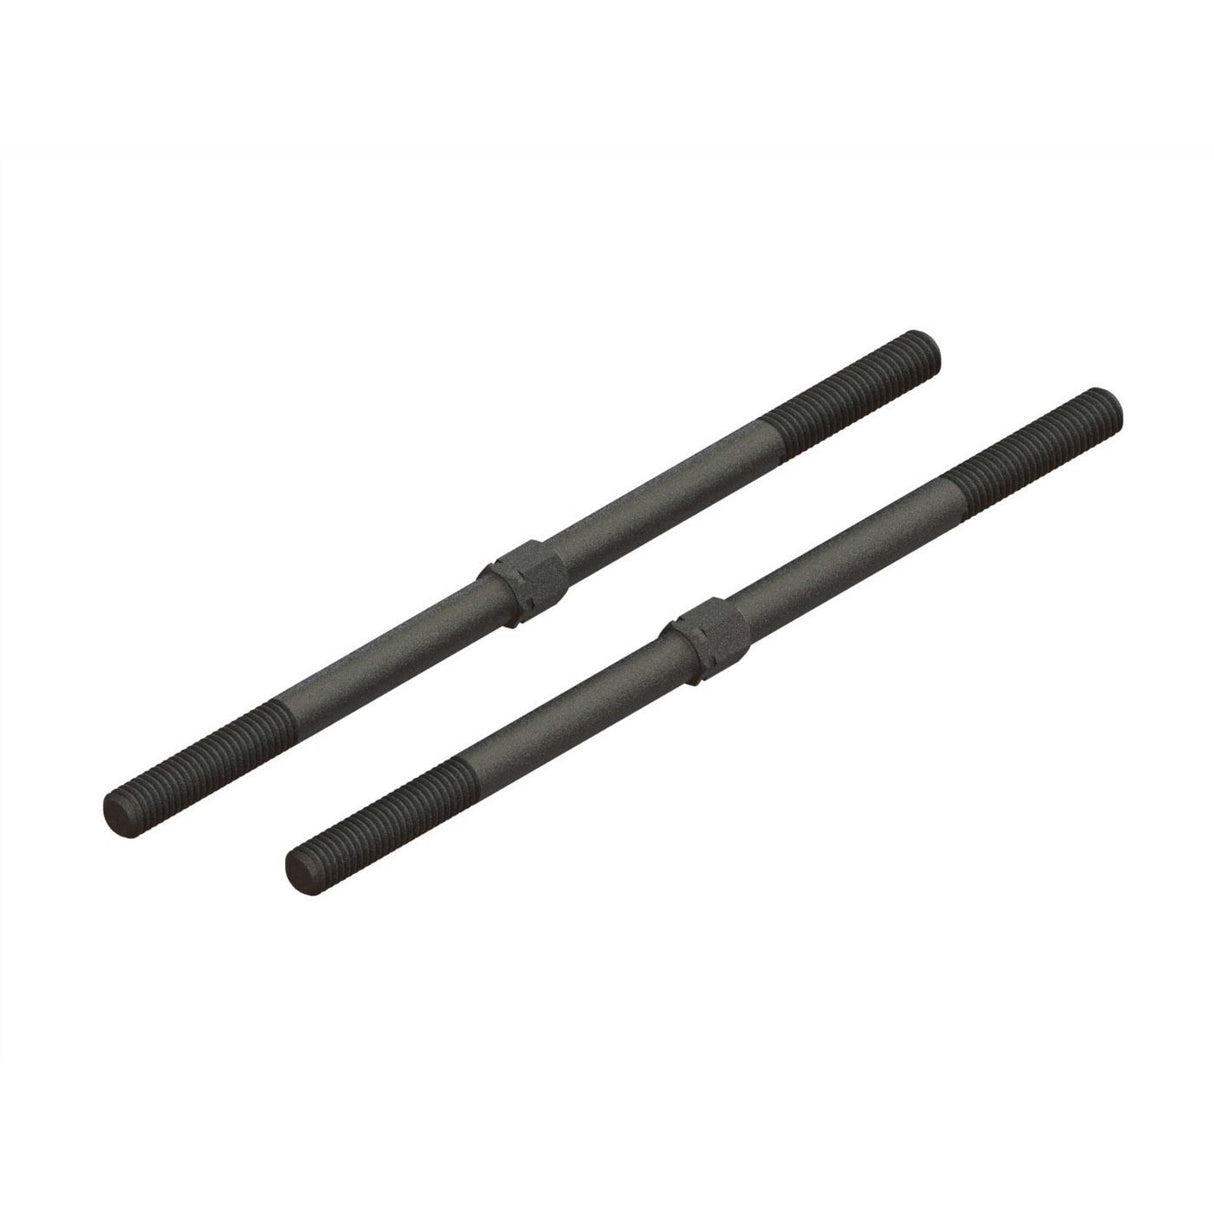 Arrma Steel Turnbuckle M6x130mm (Black) (2)